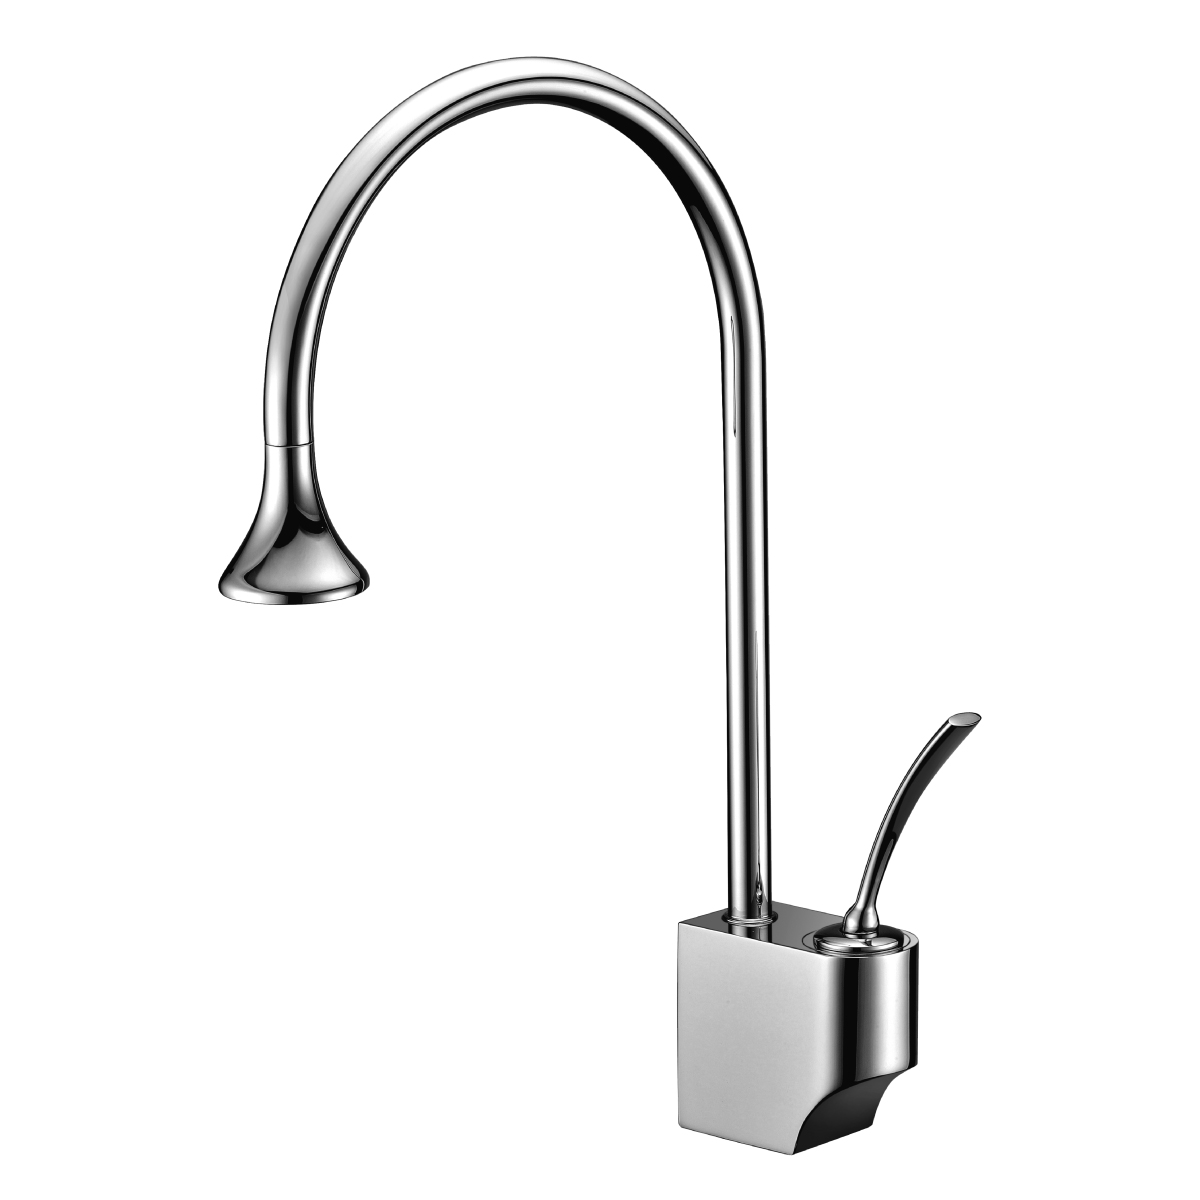 LM6005C Kitchen faucet with swivel spout